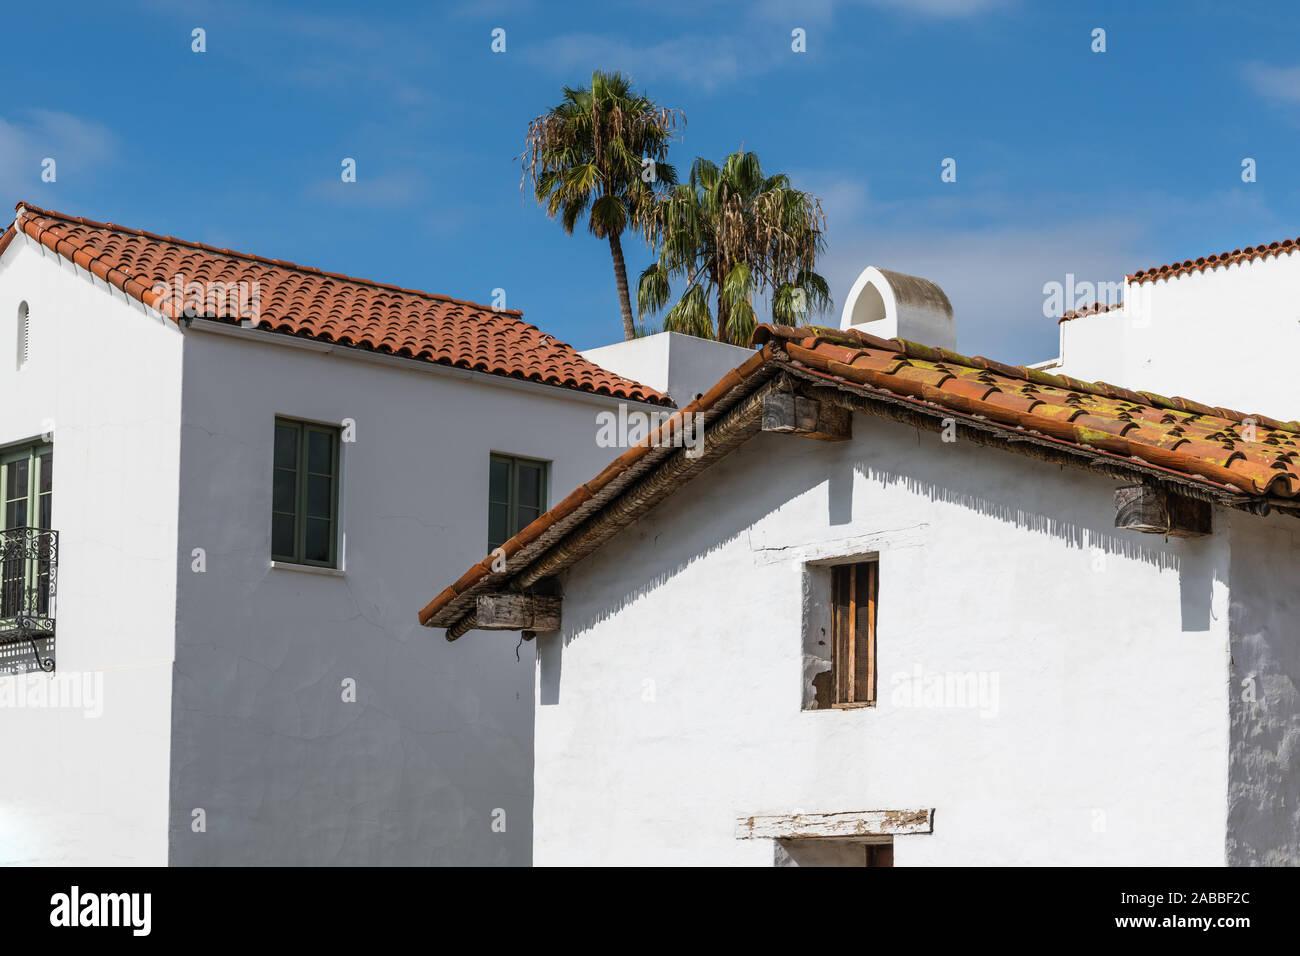 Nuevos y viejos edificios de estilo español con paredes de yeso blanco y techos de teja roja bajo un cielo azul con palmeras en el centro de Santa Bárbara, California Foto de stock